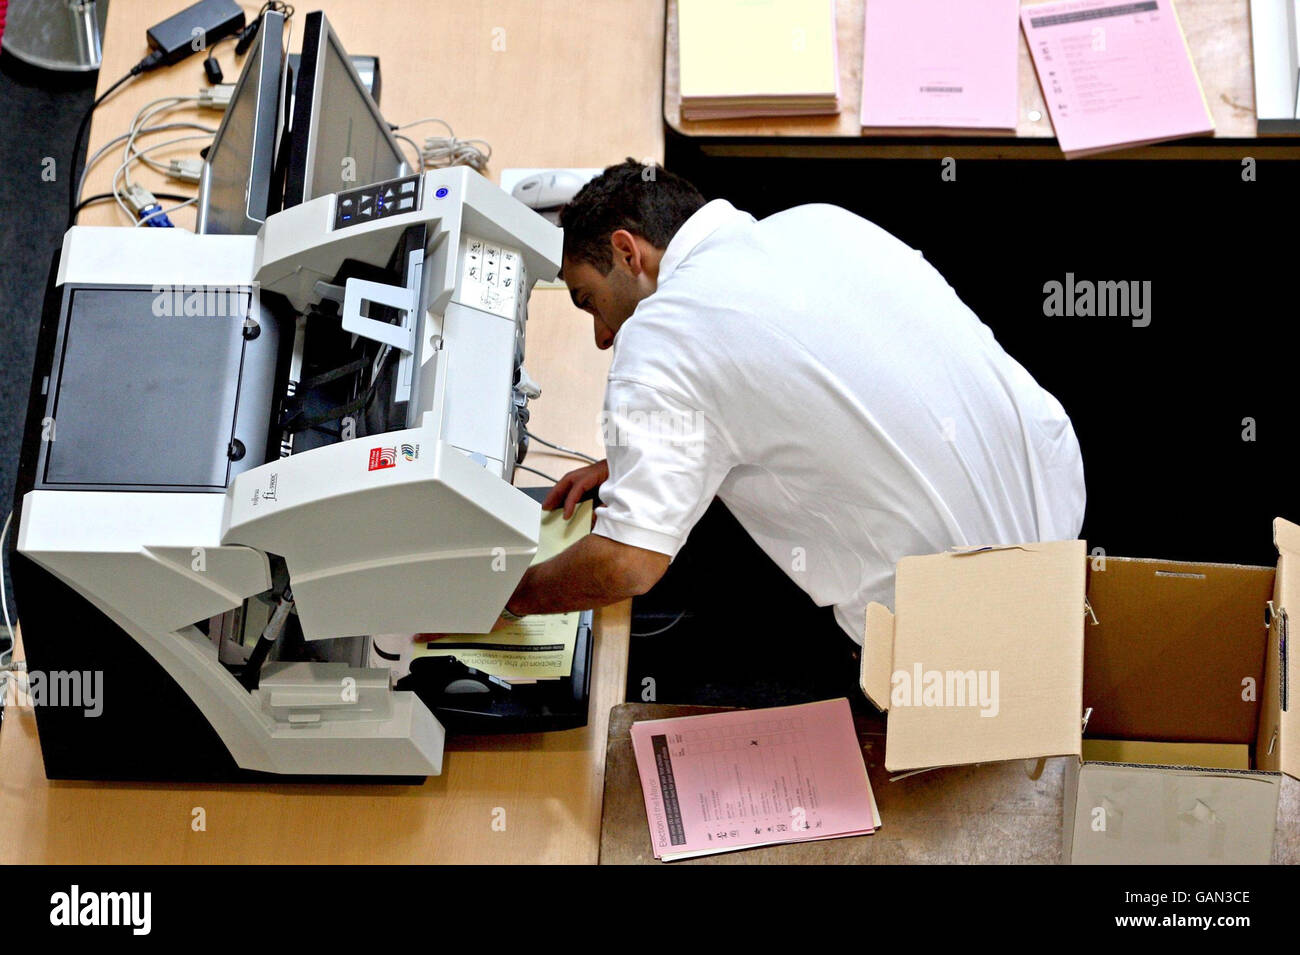 Les votes sont comptés à l'aide de machines électroniques pour la première fois au centre de comptage Olympia de Londres. Banque D'Images